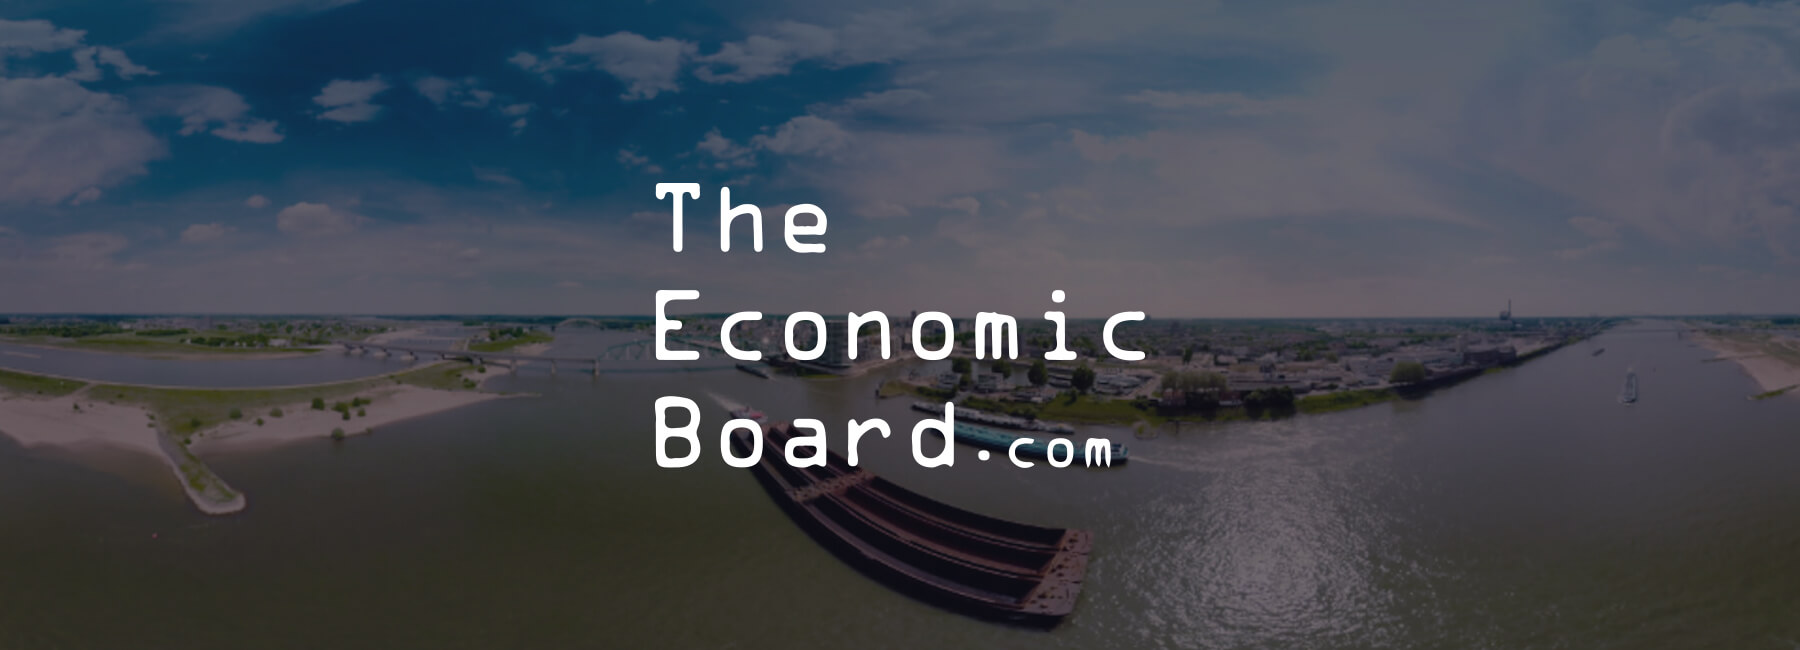 De kick off van Economic Board met Mopinion software